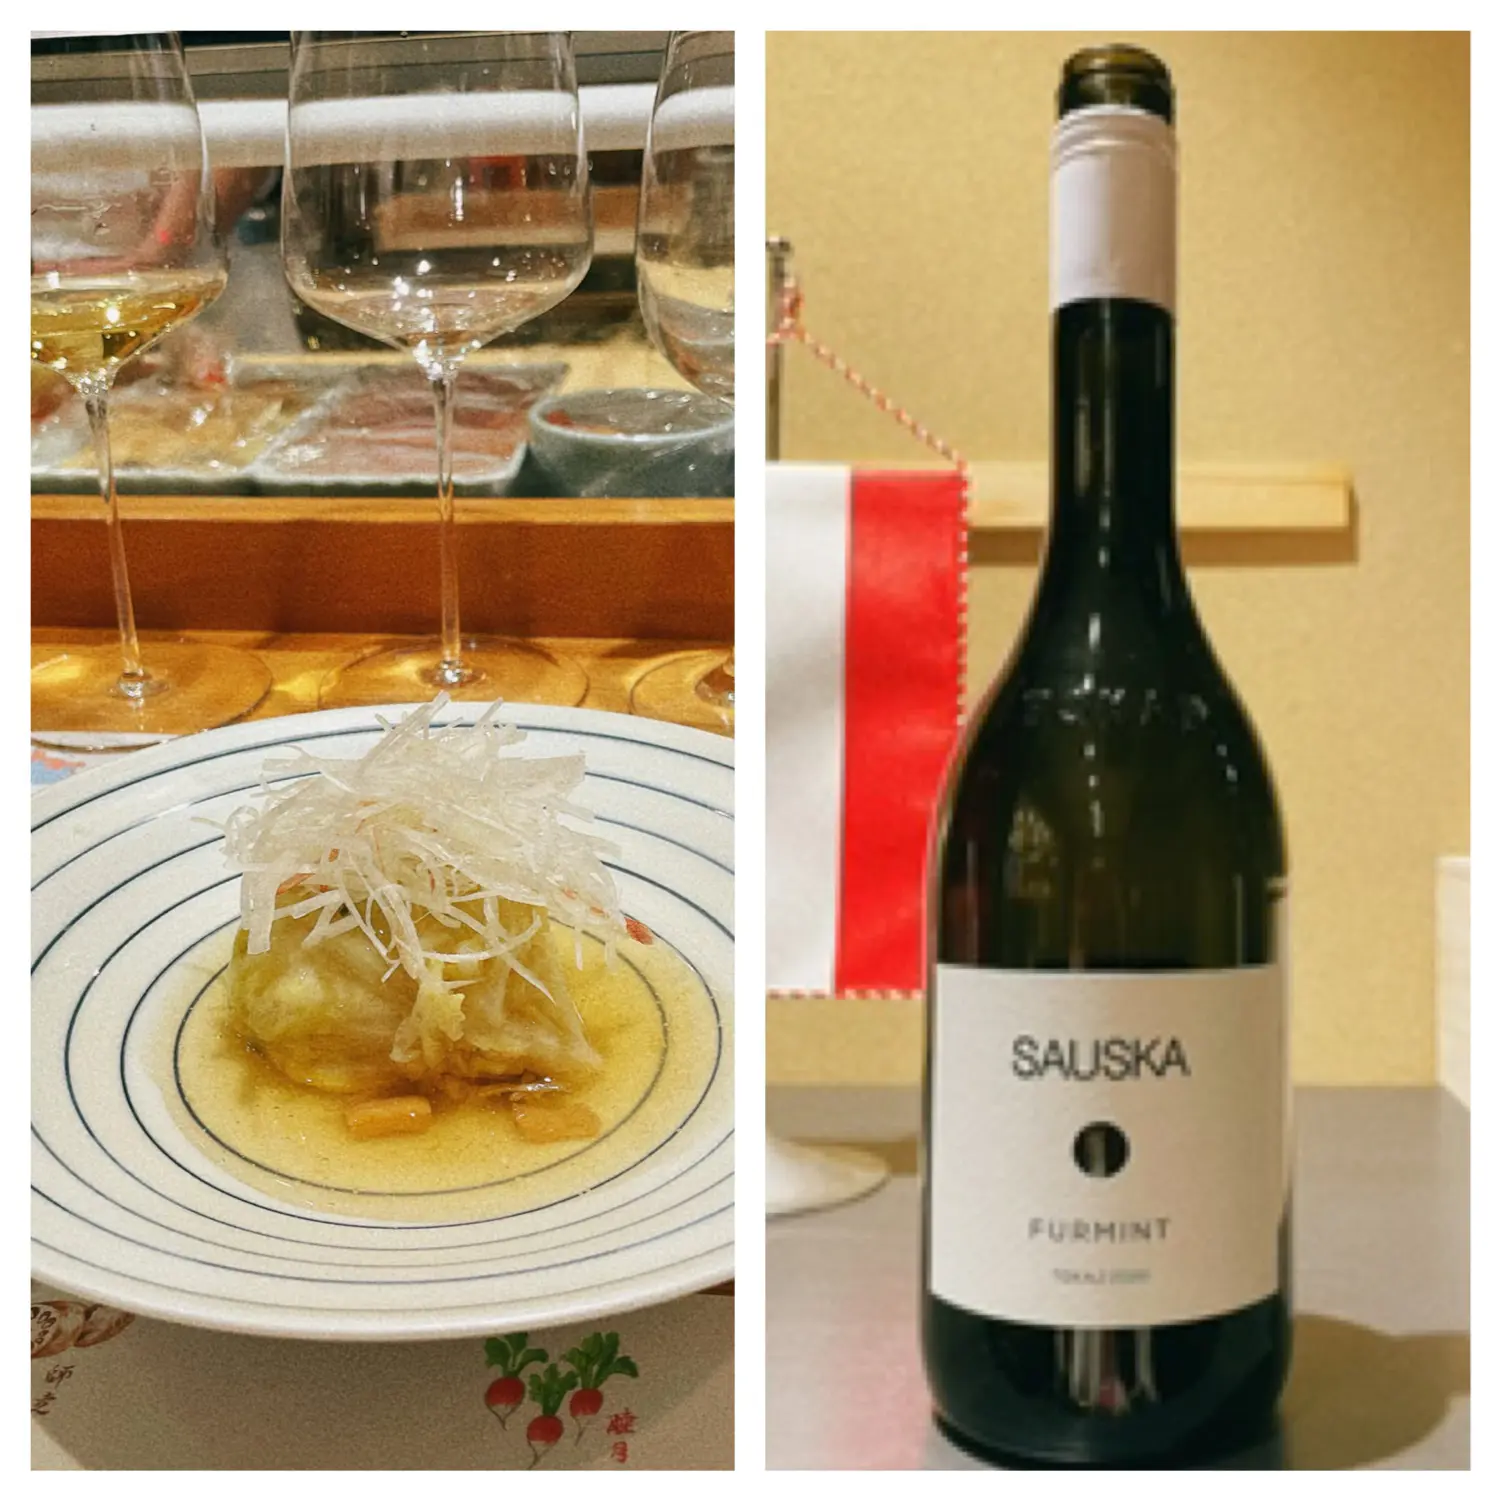 オーストリア、ハンガリーのワインとお寿司のマリアージュを楽しむ会 in 銀座_1_5